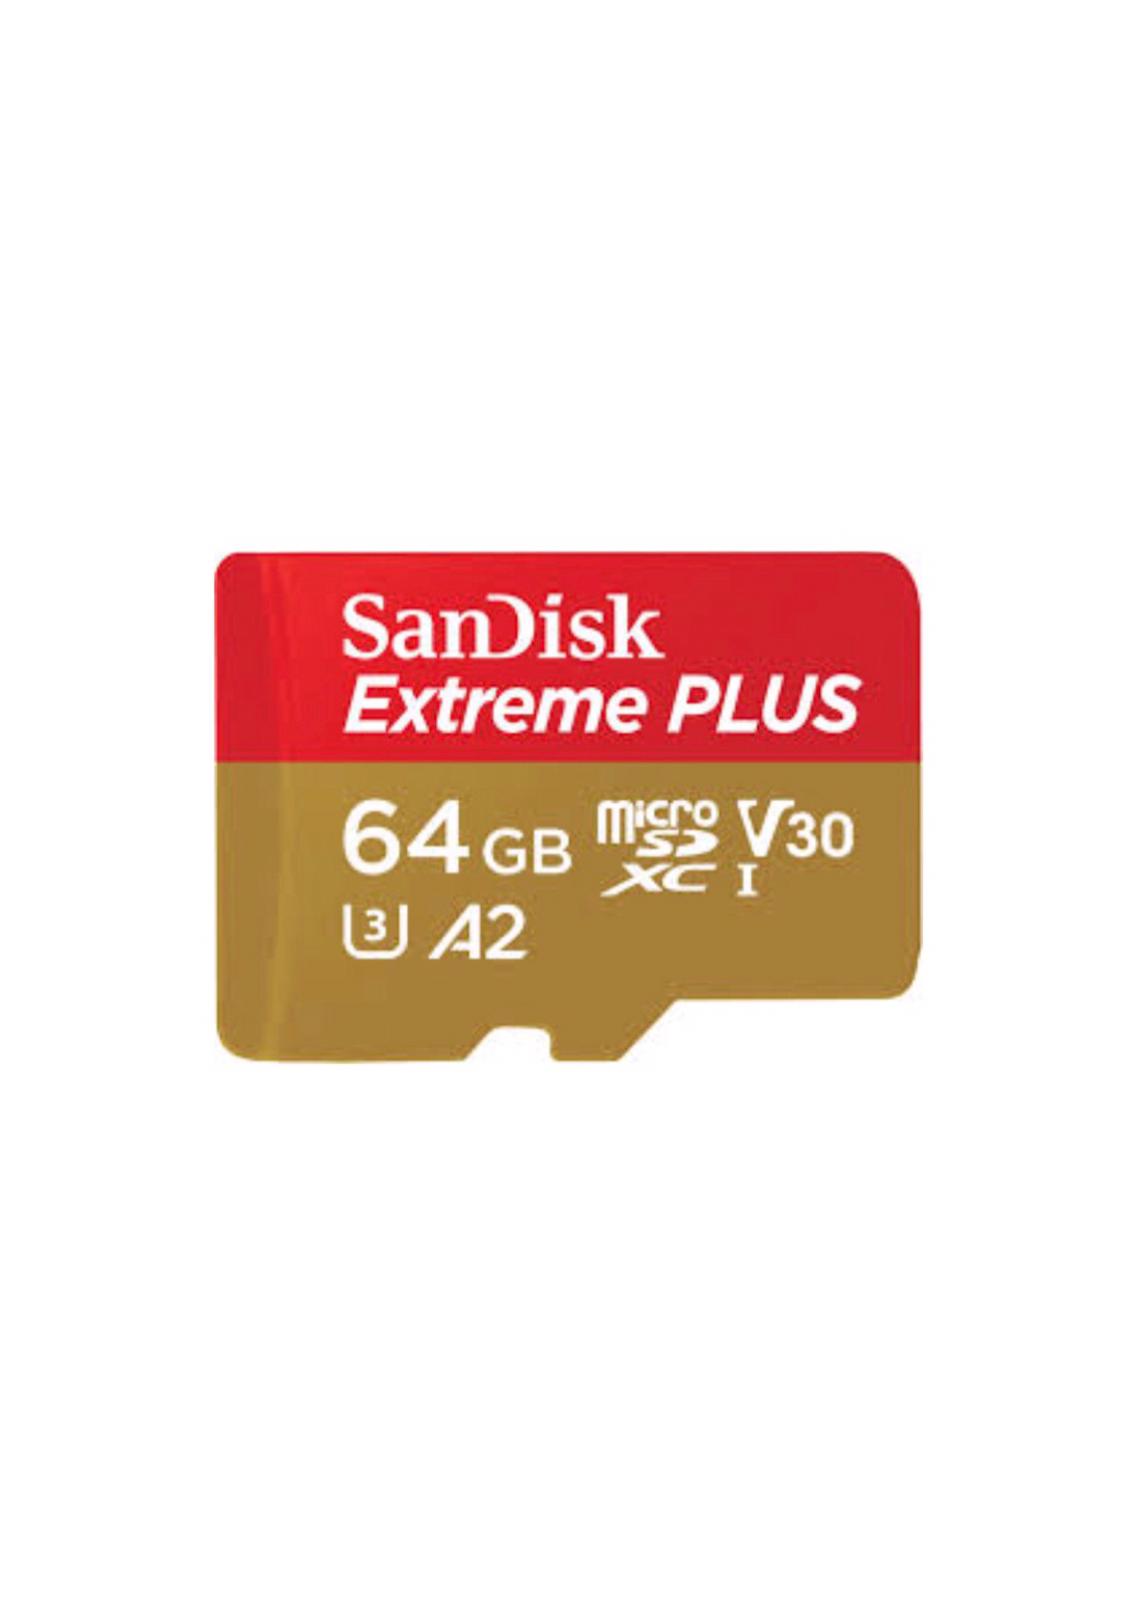 כרטיס זכרון sandisk extreme plus 64